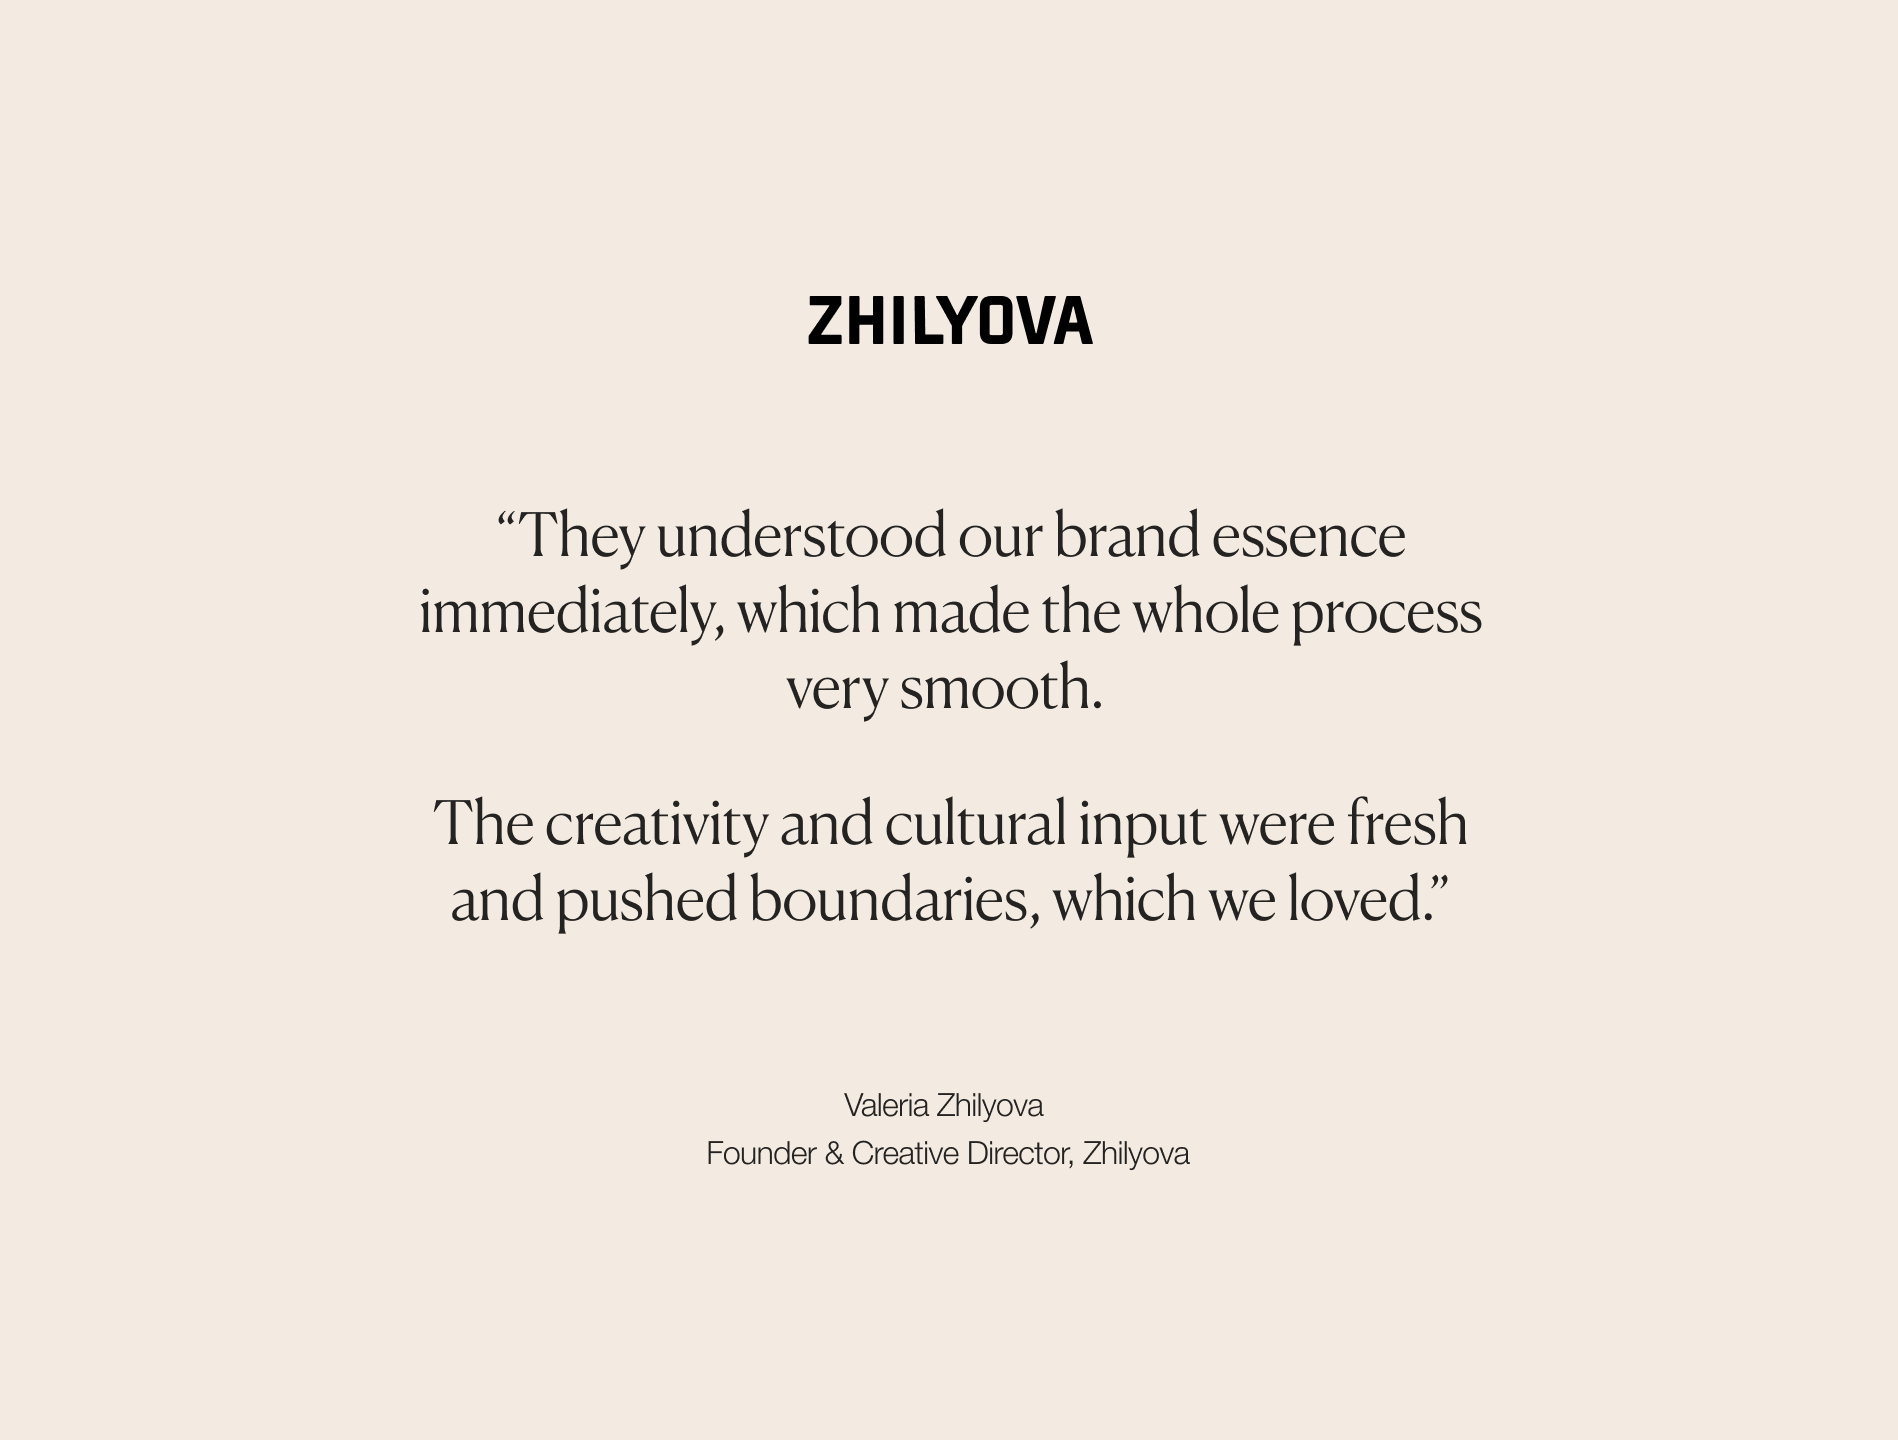 2. Zhilyova quote